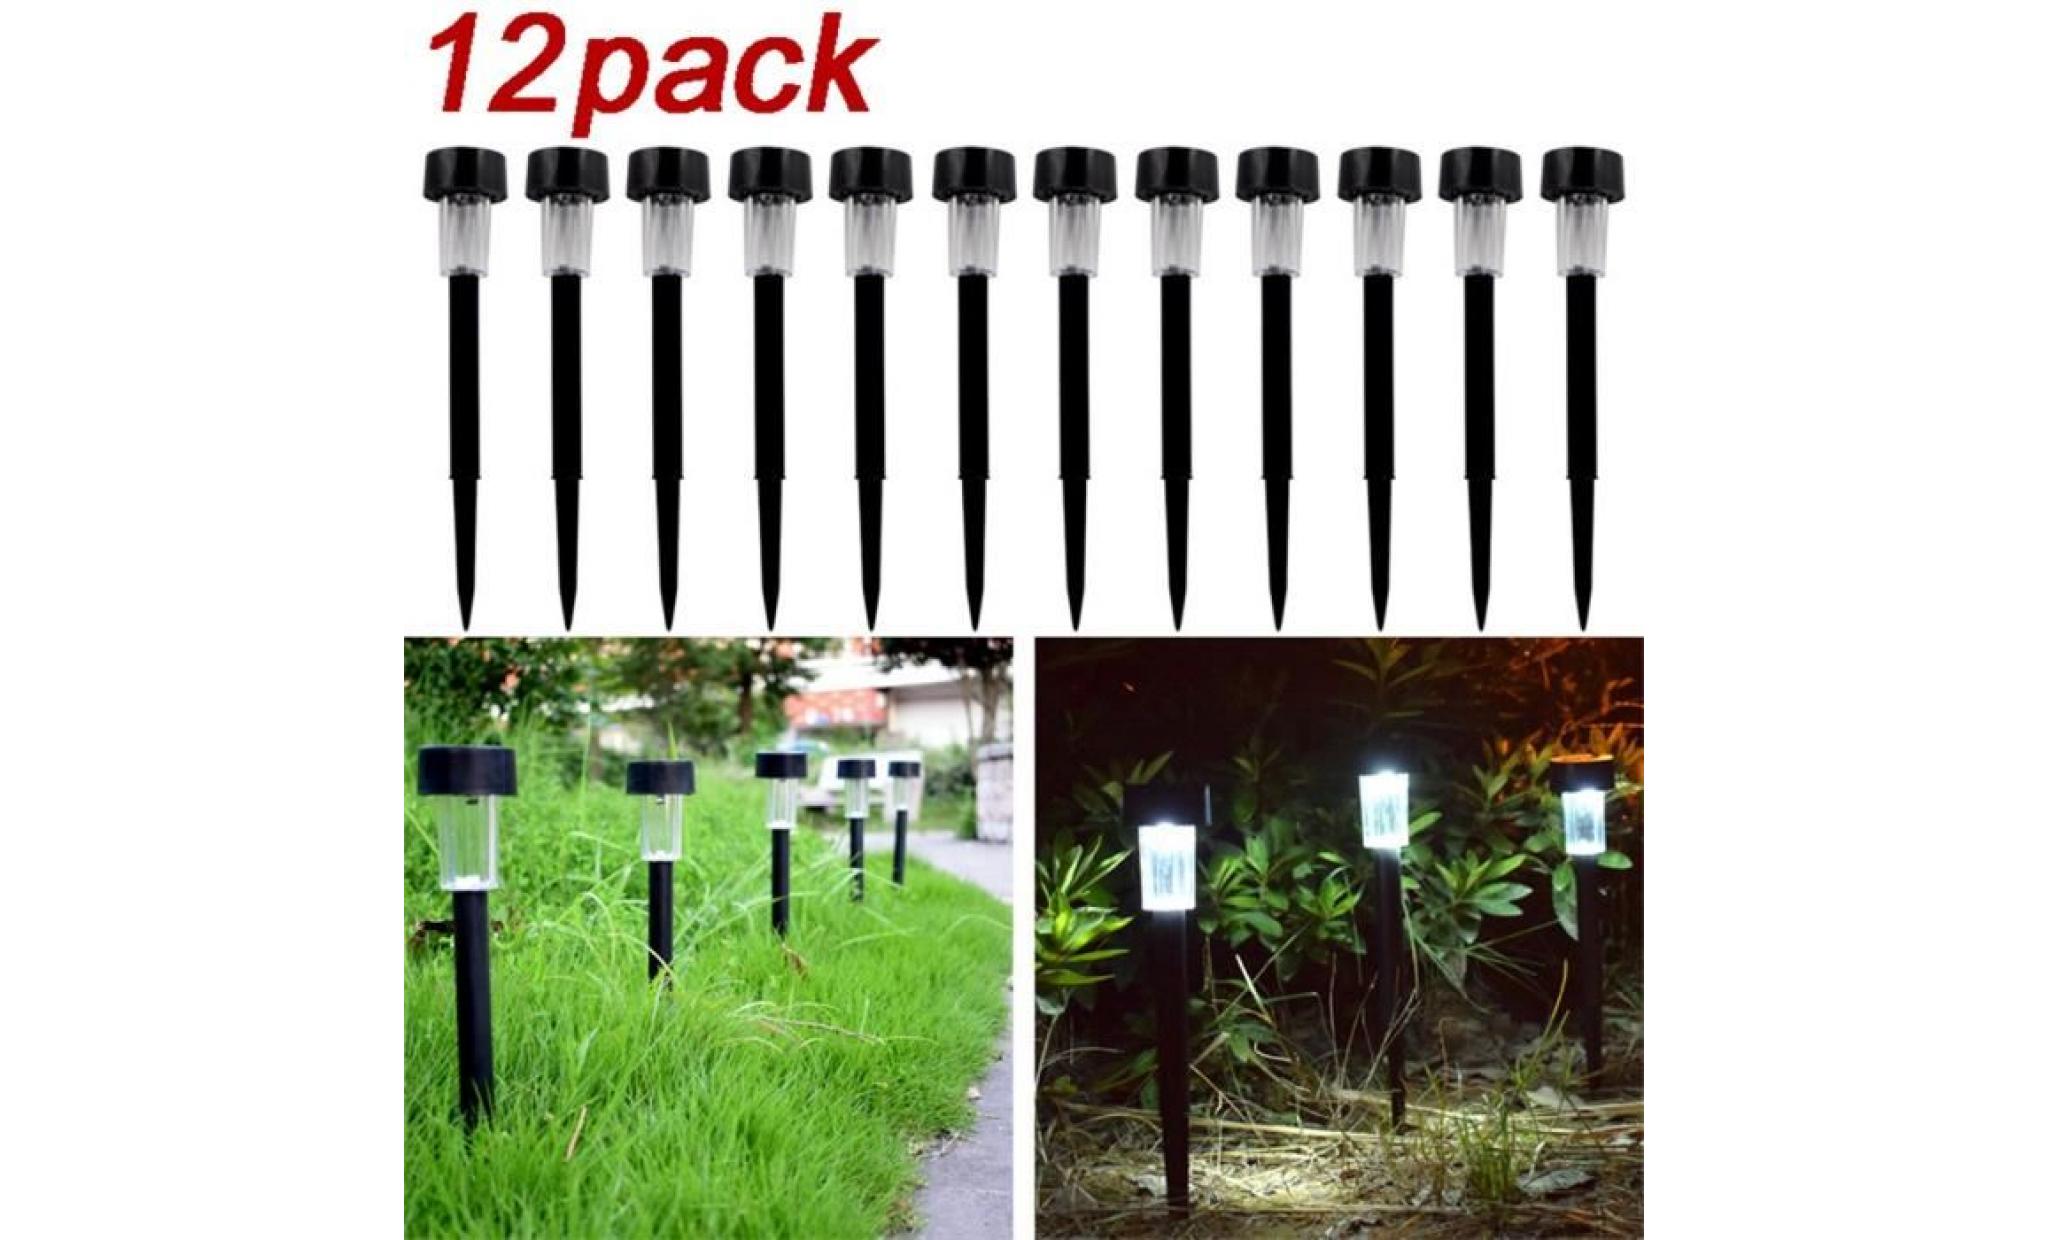 yum® 12 paquet extérieur pathway lumières led énergie solaire lumière pelouse jardin paysage chemin c